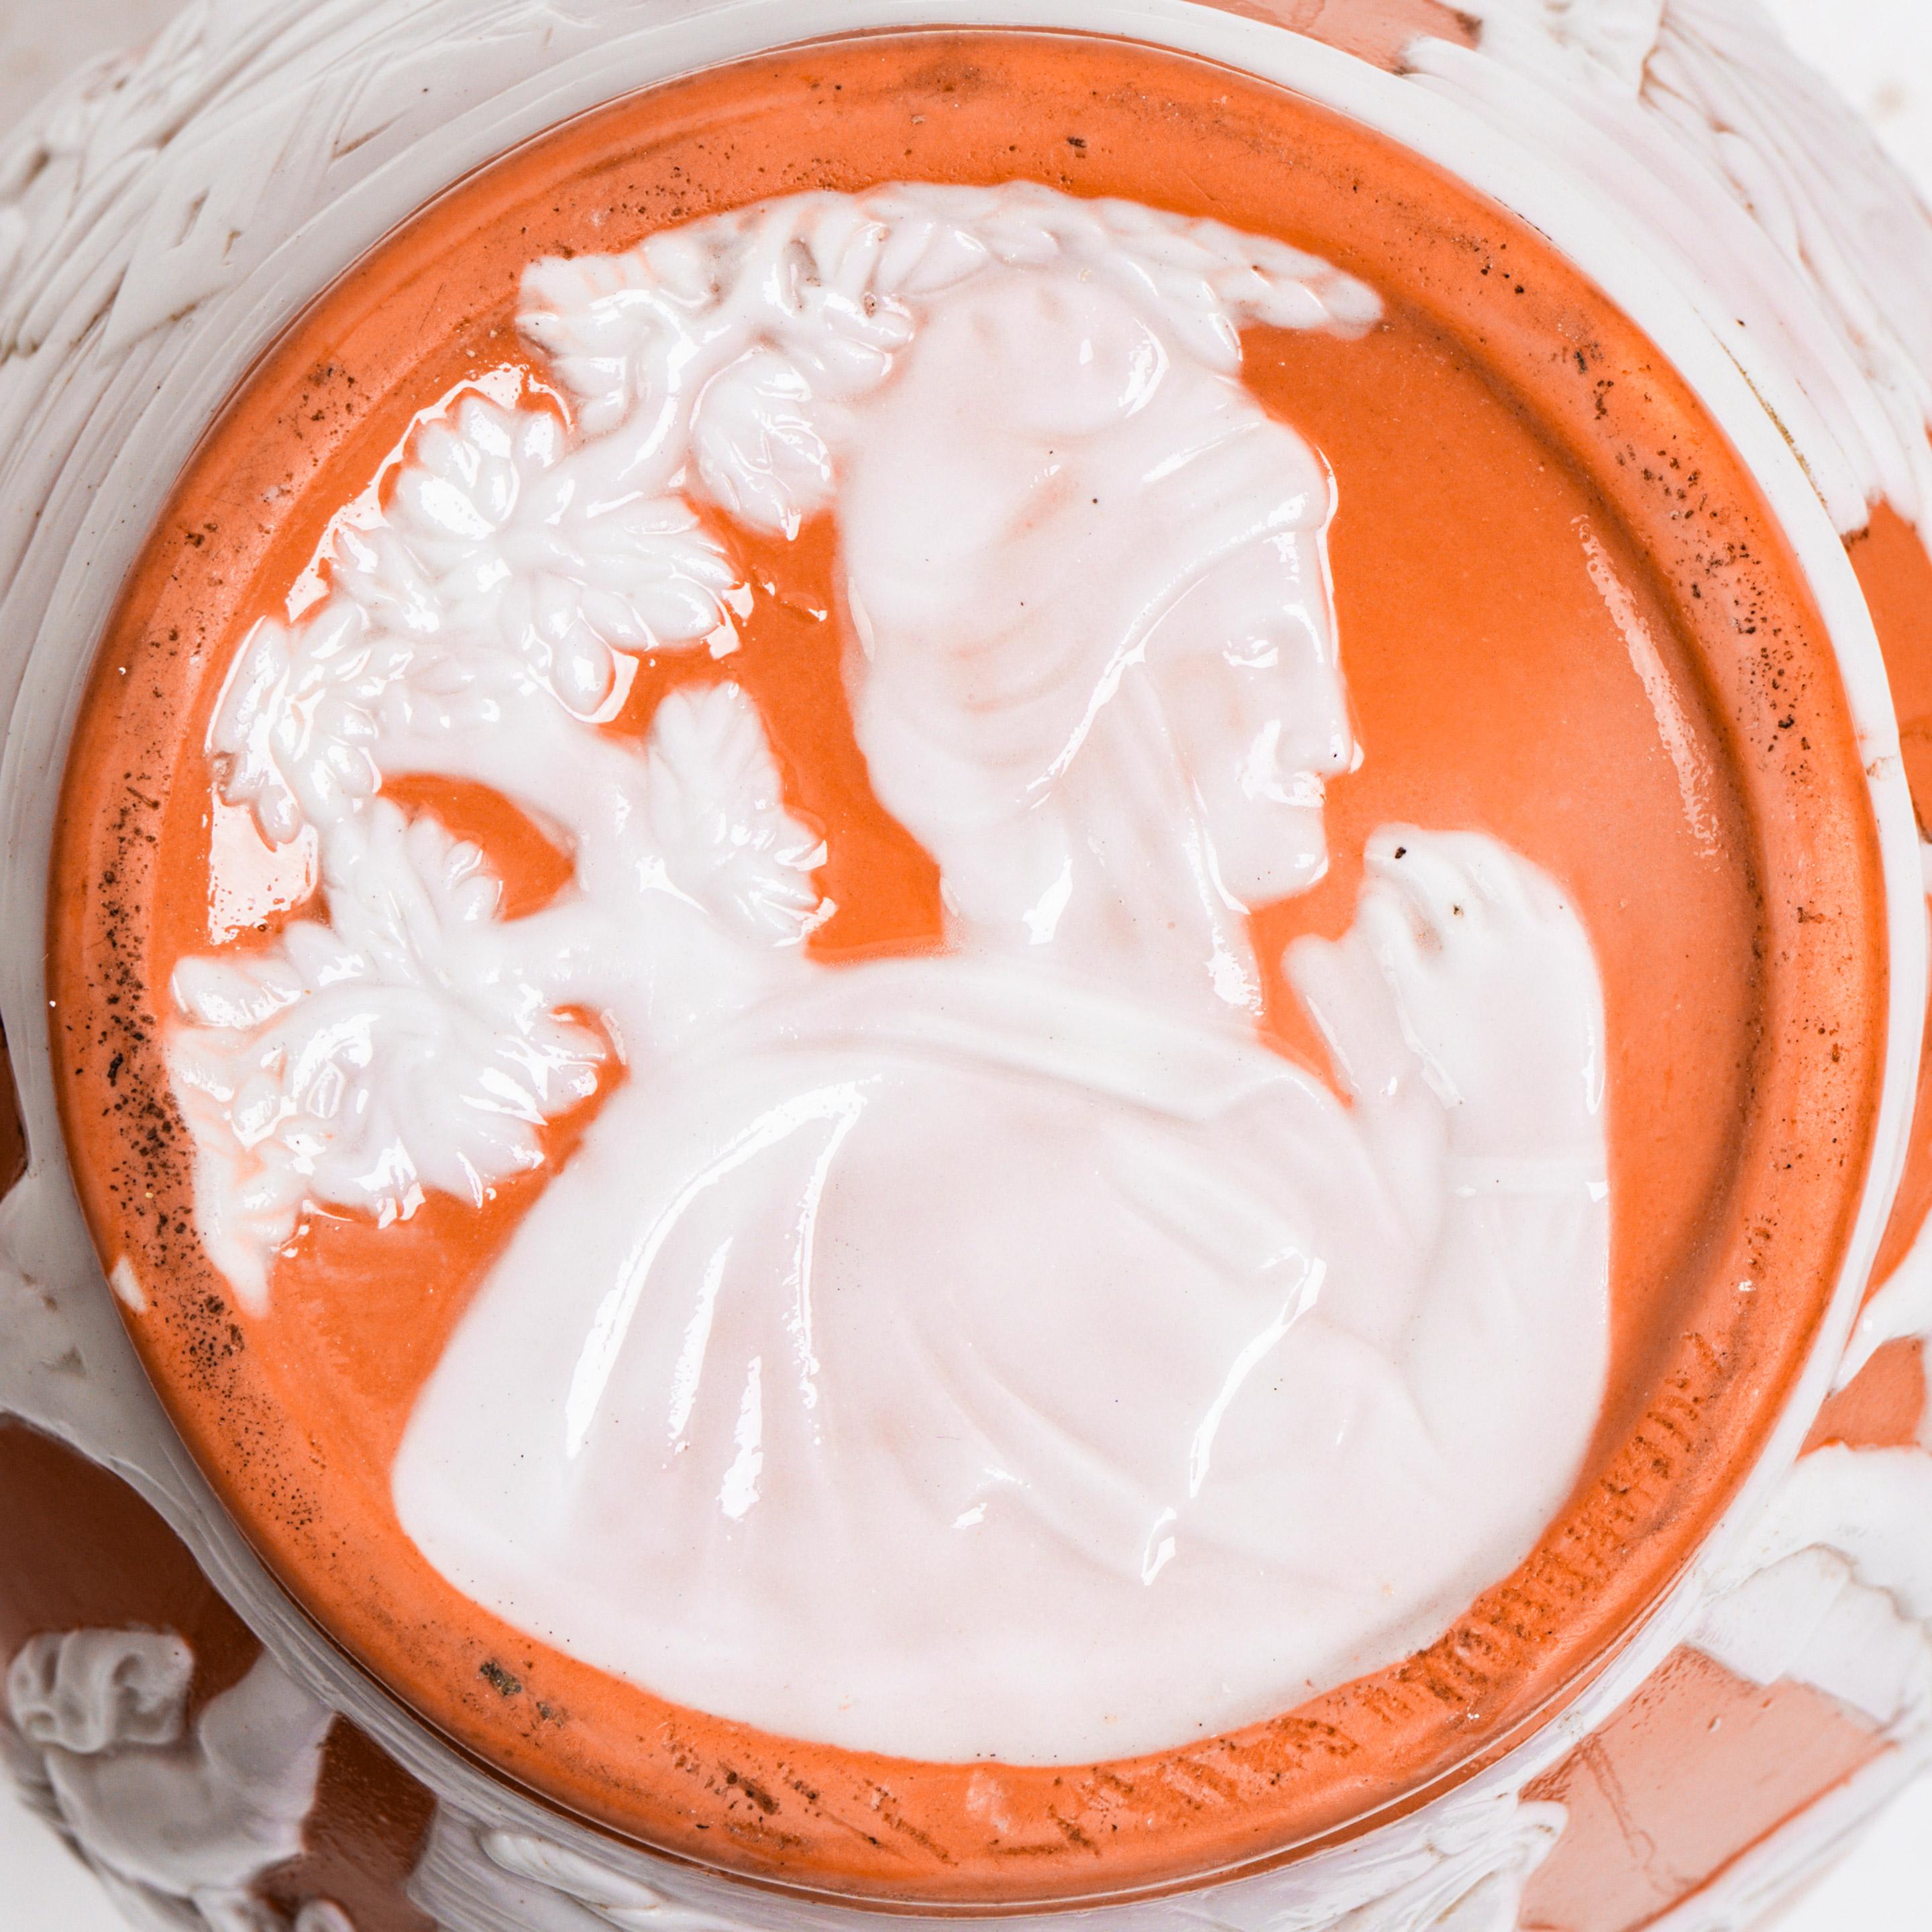 Eine englische Pate-Sur-Pate-Porzellan-Portland-Vase, möglicherweise Grainger, Worcester.
Mit zusätzlichen Reliefdetails am Sockel.
Außen gebrannte orangefarbene Glasur, innen weißes Finish.
England, um 1860.